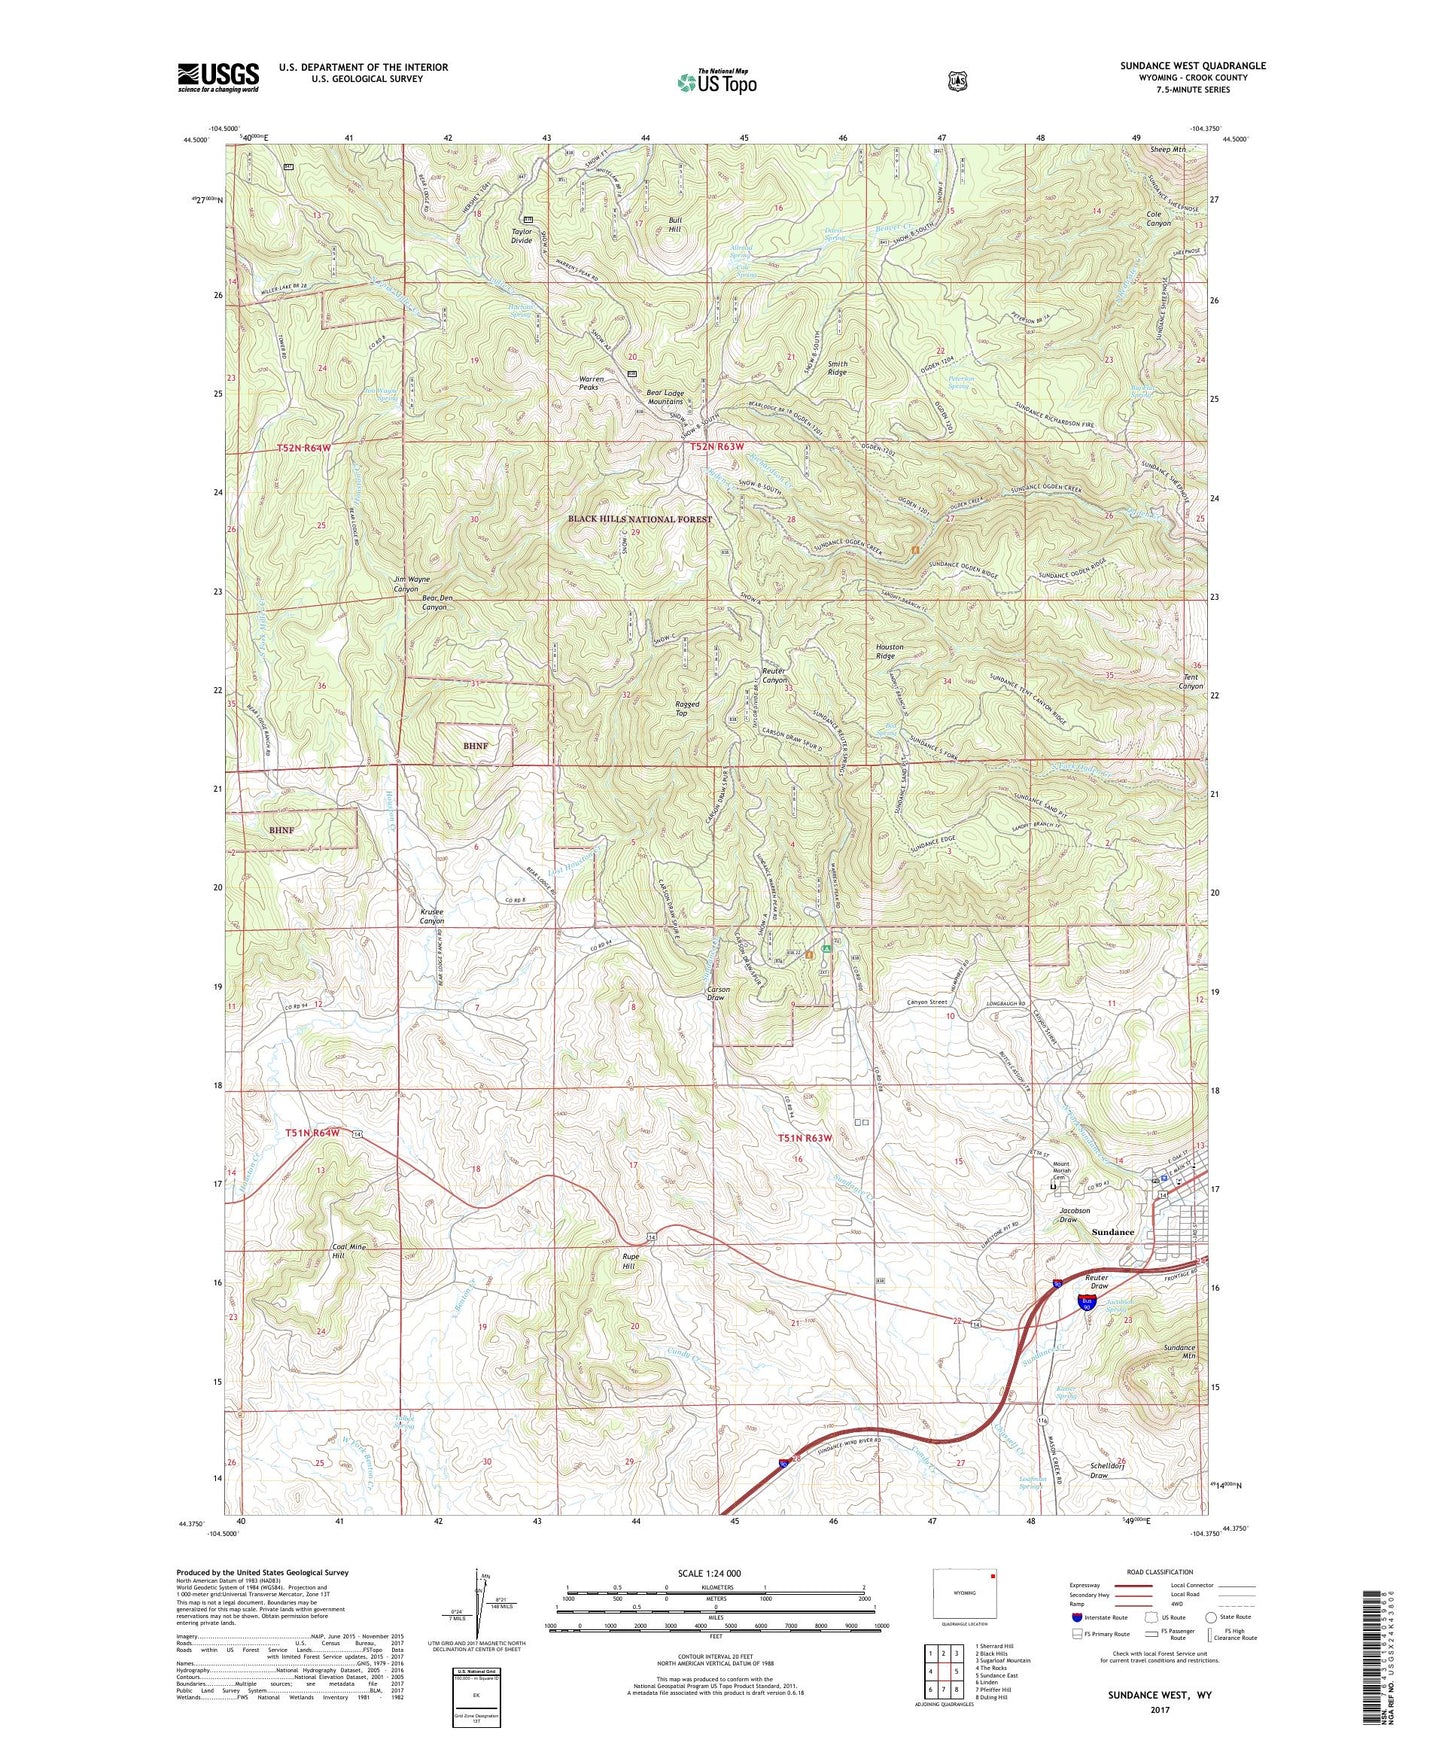 Sundance West Wyoming US Topo Map Image